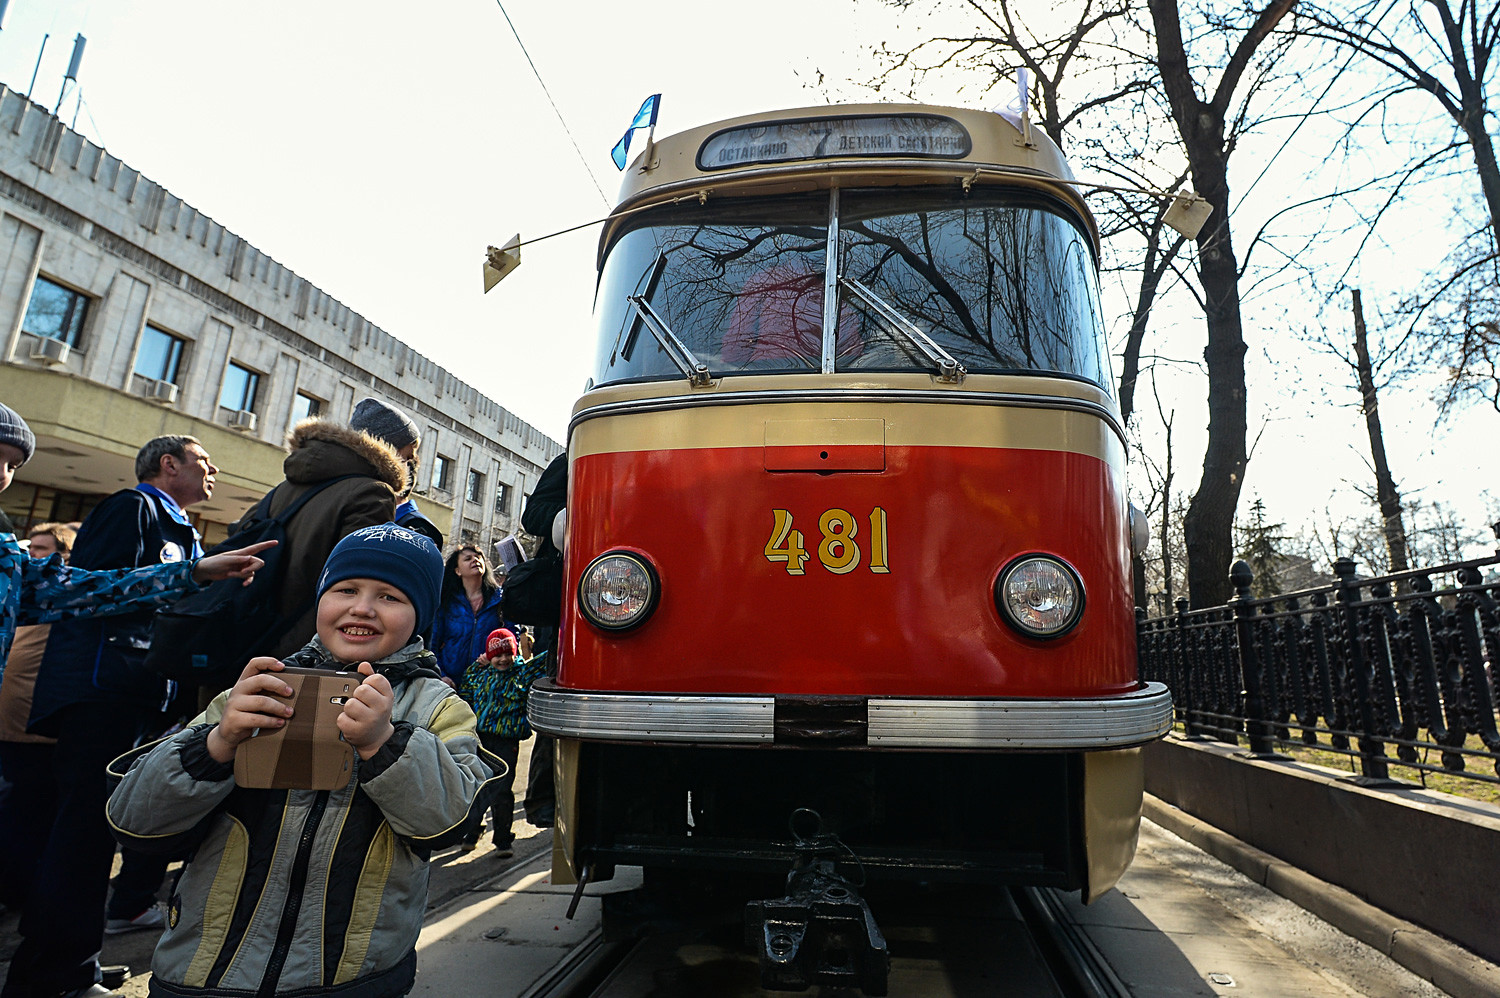 Tatra T3: Die kennen Sie doch, oder? Die Tatra aus den Tschechoslowakischen Tramwerken war die populärste aller Straßenbahnen (nicht nur) in der Sowjetunion. Mehr als 11.000 Wagen importierte Moskau. In zahlreichen umgestalteten Varianten verkehren viele bis heute in allen Ex-Sowjetrepubliken.